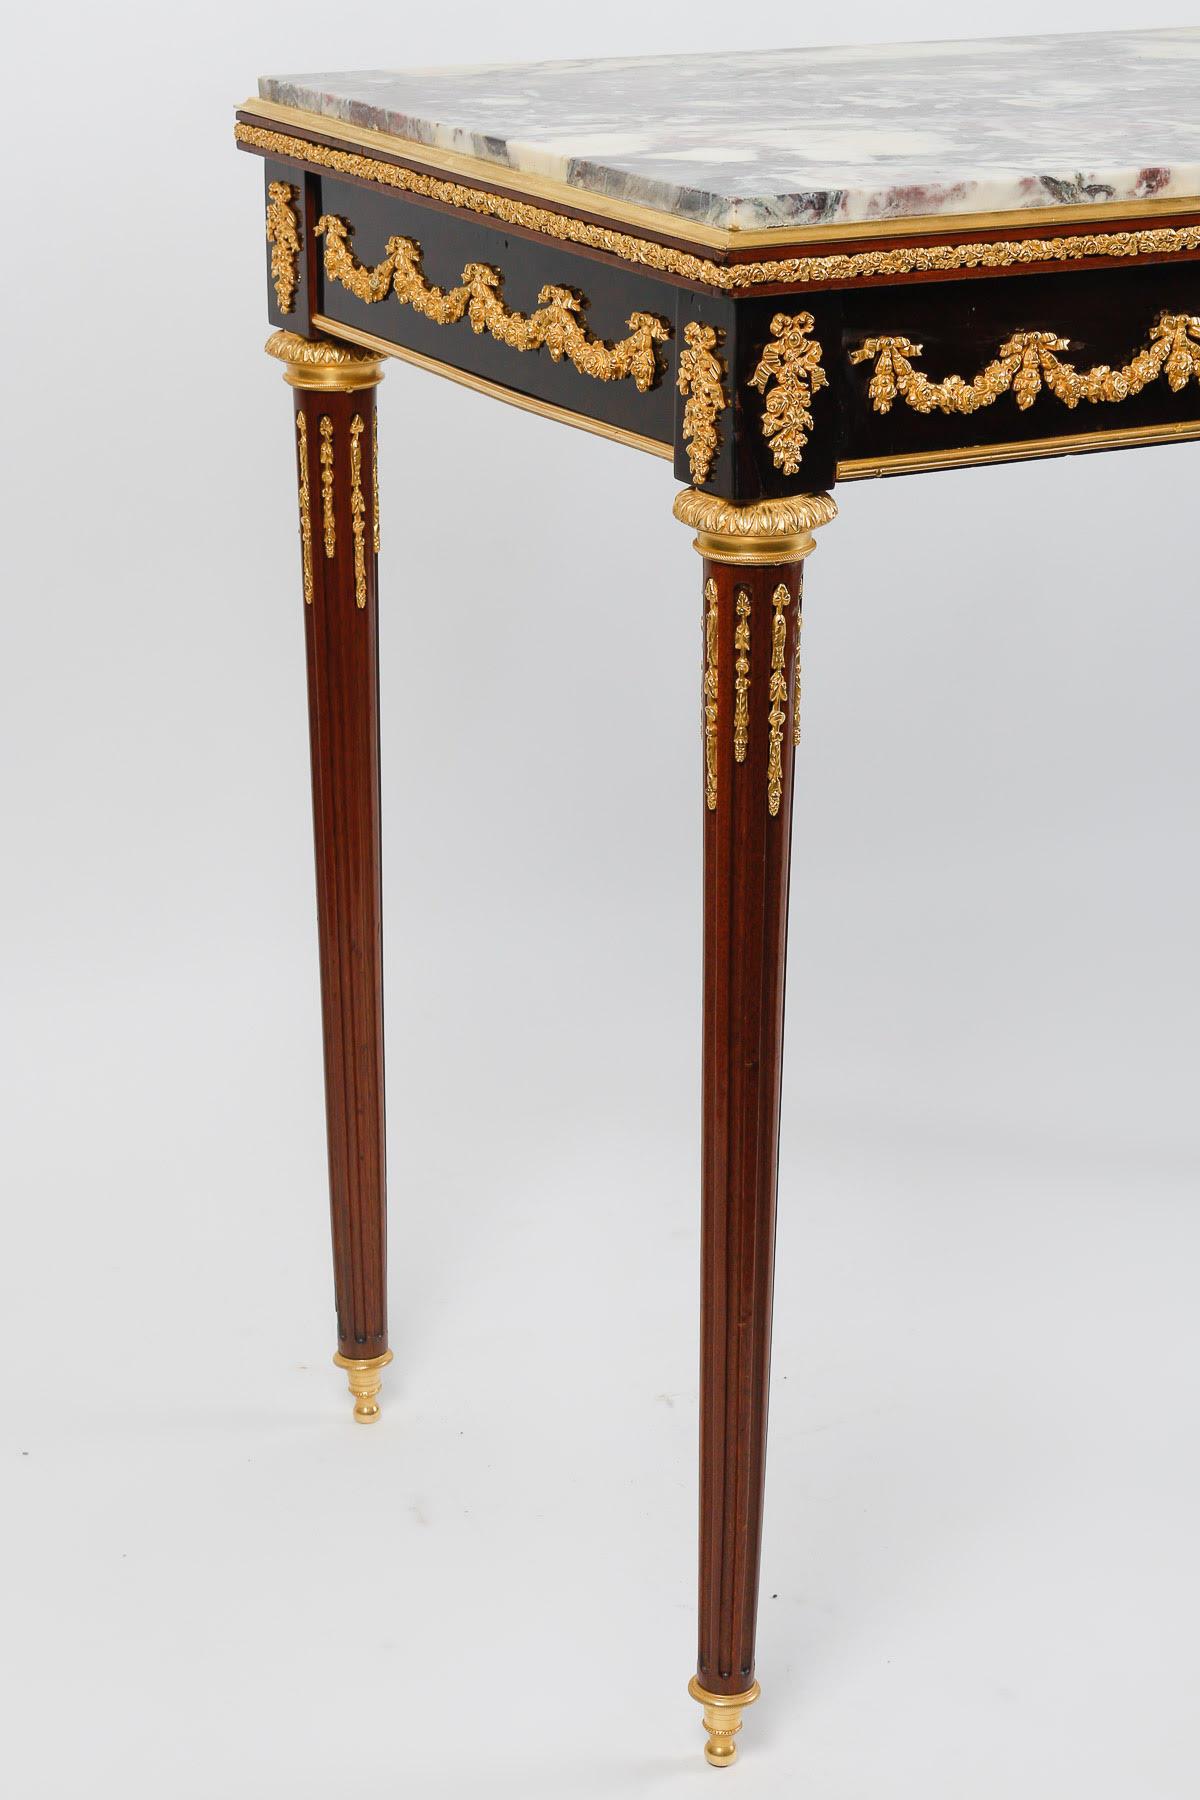 Gilt Centre Table, Small Desk 19th Century, Napoleon III Period. For Sale